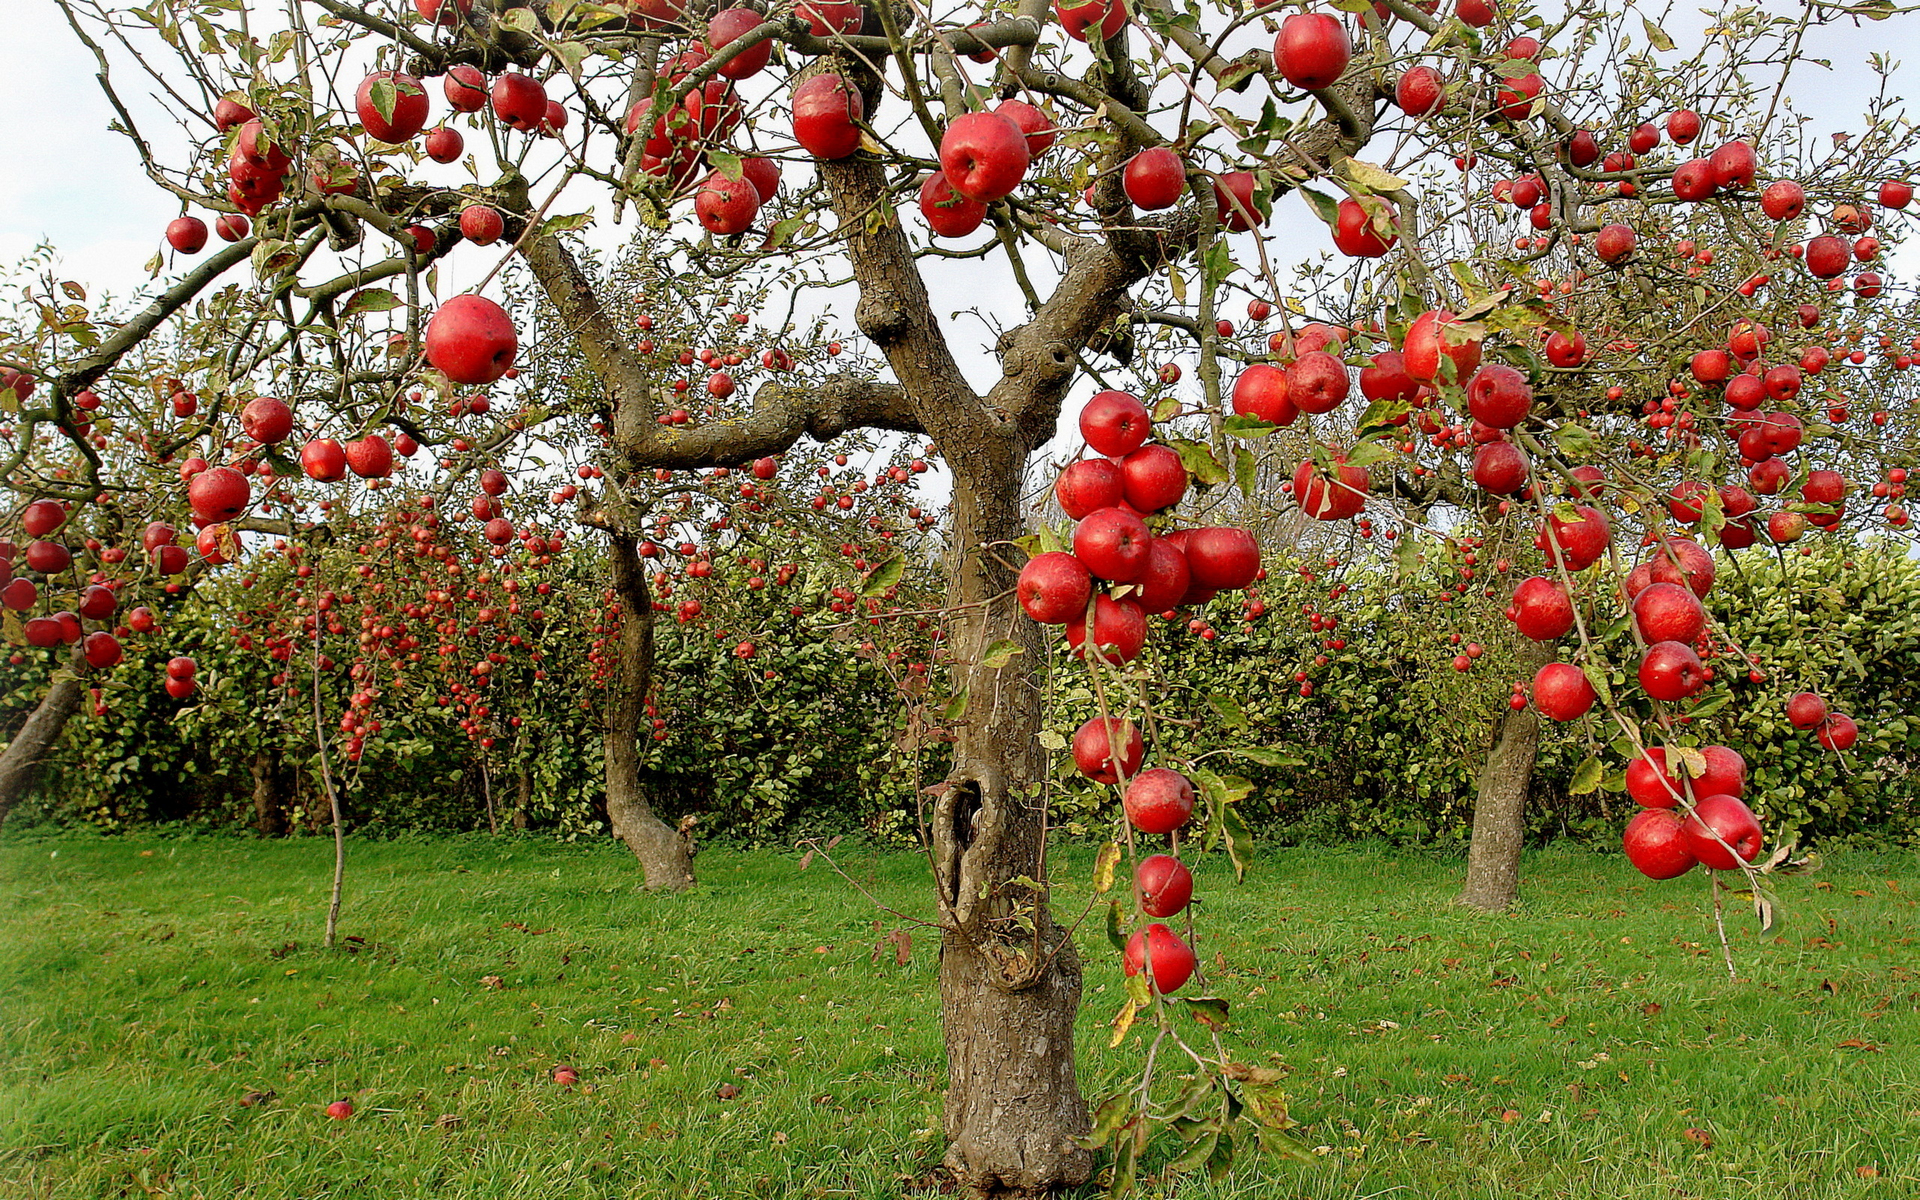 Wallpapers apples trees garden on the desktop